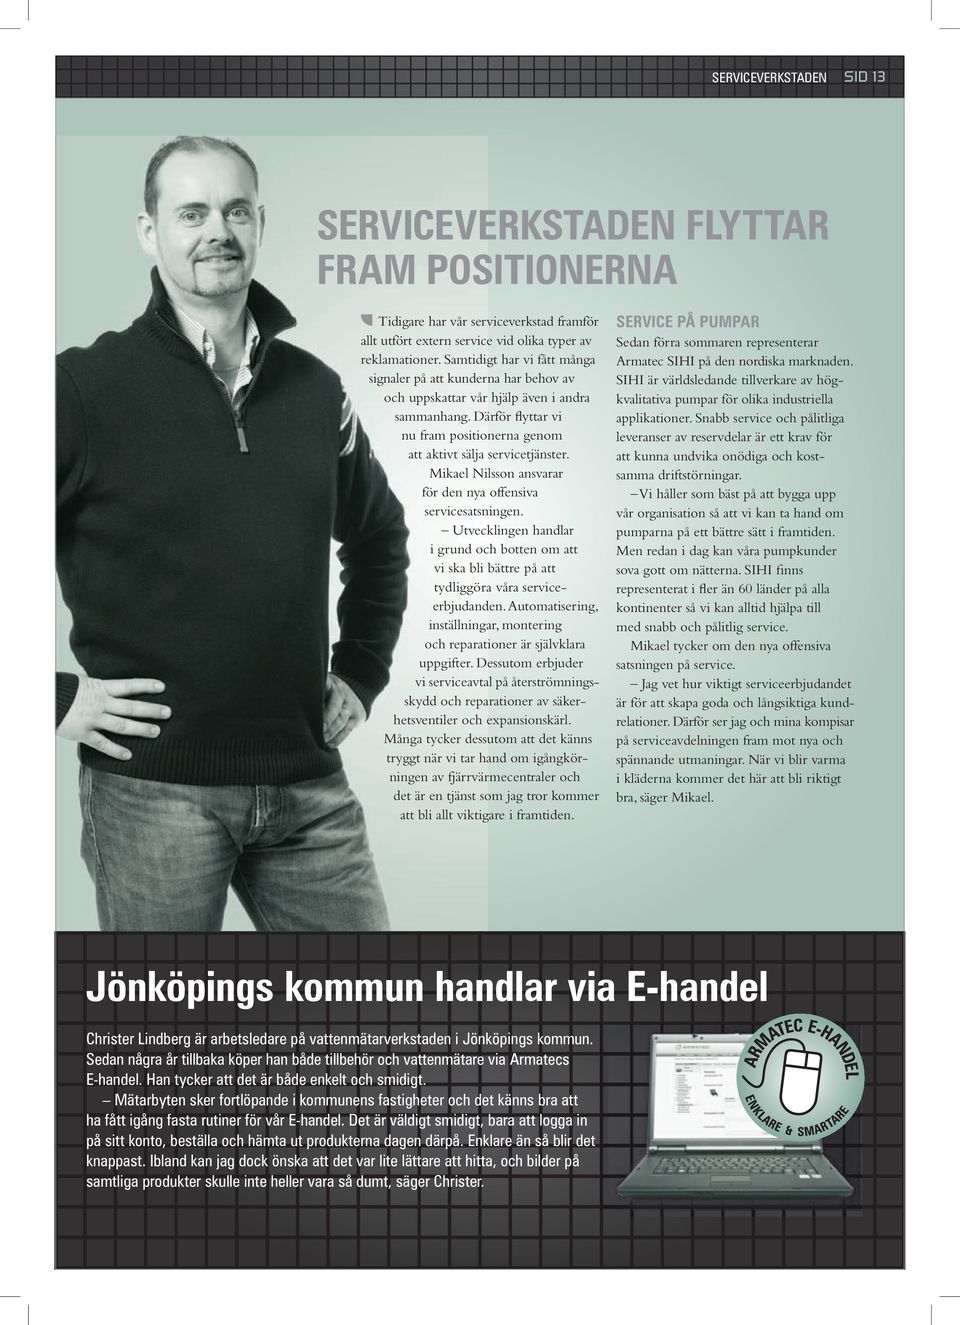 Mikael Nilsson ansvarar för den nya offensiva servicesatsningen. Utvecklingen handlar i grund och botten om att vi ska bli bättre på att tydliggöra våra serviceerbjudanden.